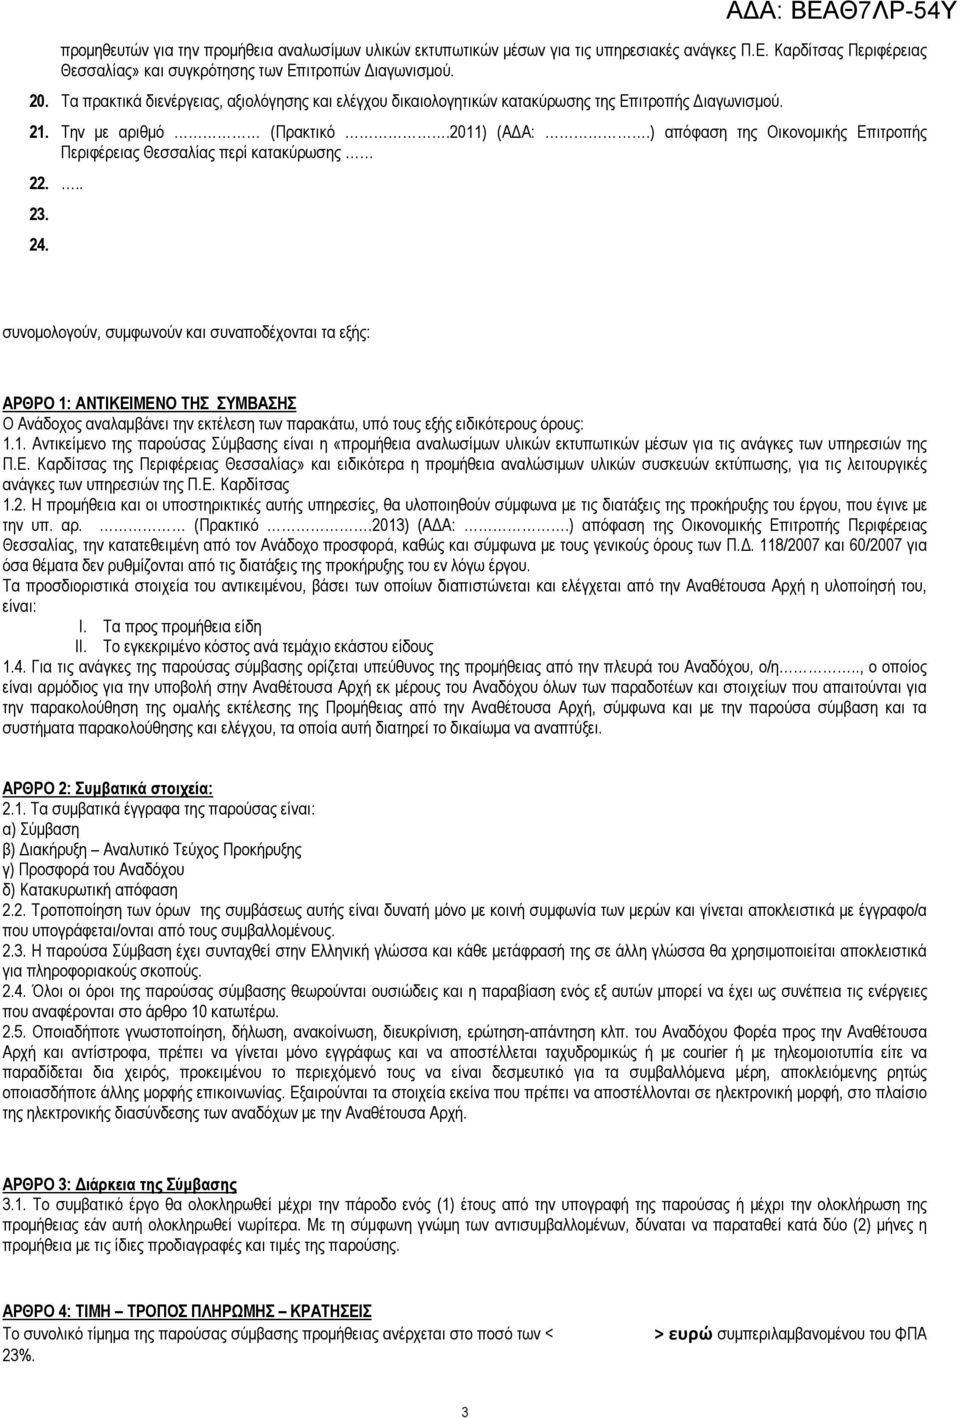 ) απόφαση της Οικονοµικής Επιτροπής Περιφέρειας Θεσσαλίας περί κατακύρωσης 22... 23. 24.